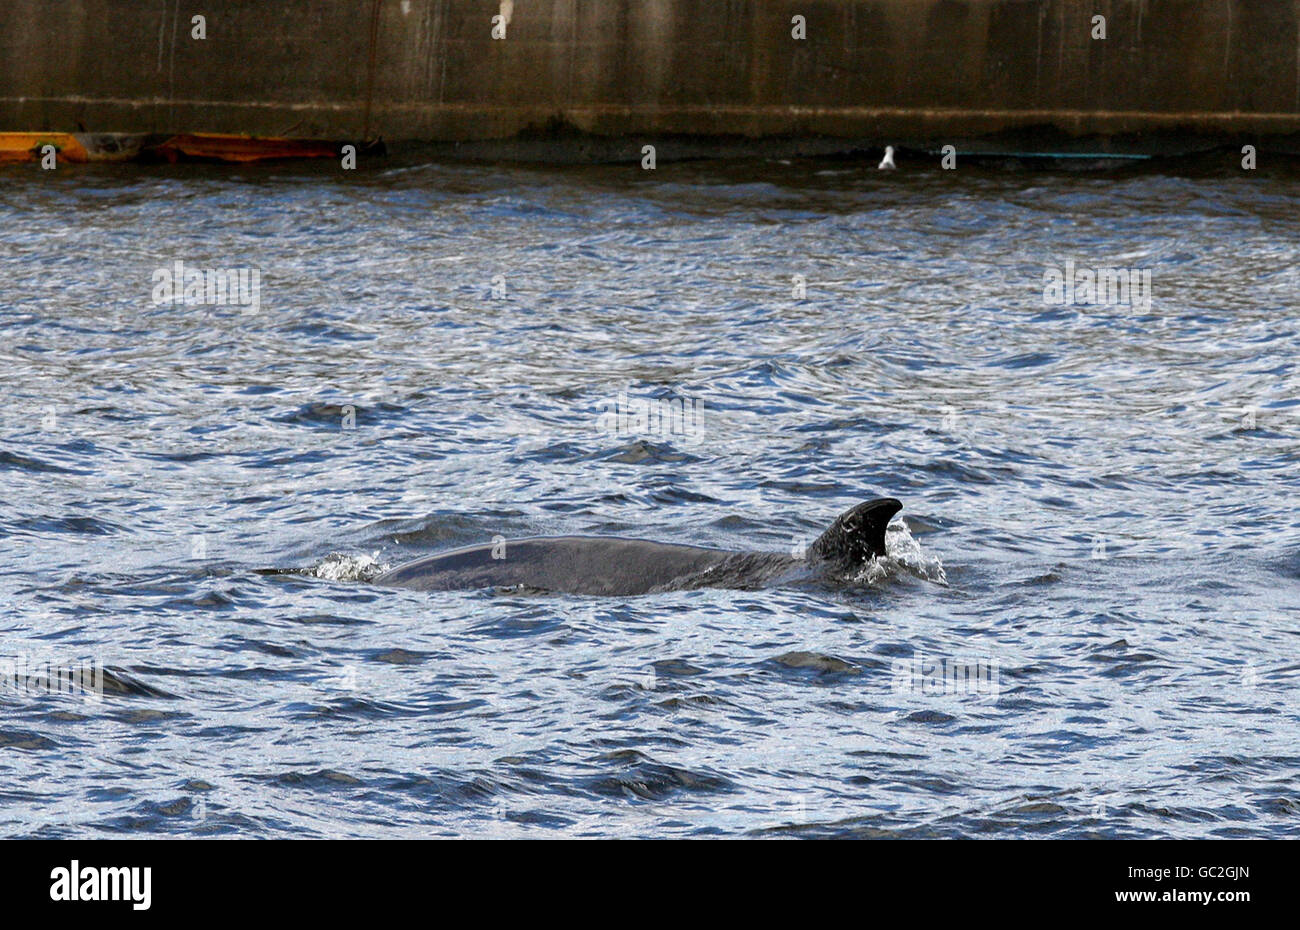 Una balena del Northern Bottlenose che nuota nel fiume Clyde a Glasgow come operazione di salvataggio è lanciata per aiutare la creatura bloccata. Foto Stock